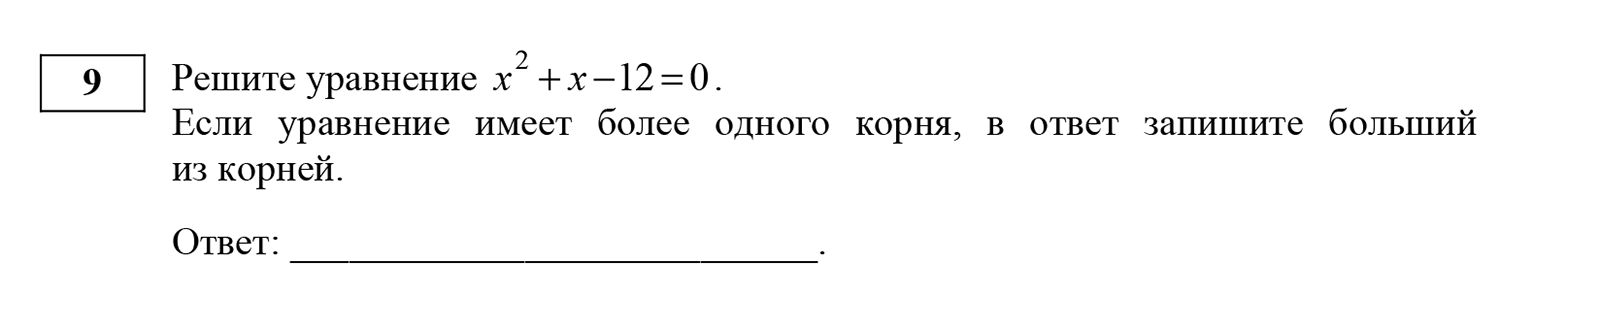 Типичное квадратное уравнение: ищем формулу для корней, подставляем значения и решаем простым подсчетом. Получится два корня: −4 и 3, в ответ запишем только 3, так как он больший. Источник: ФИПИ